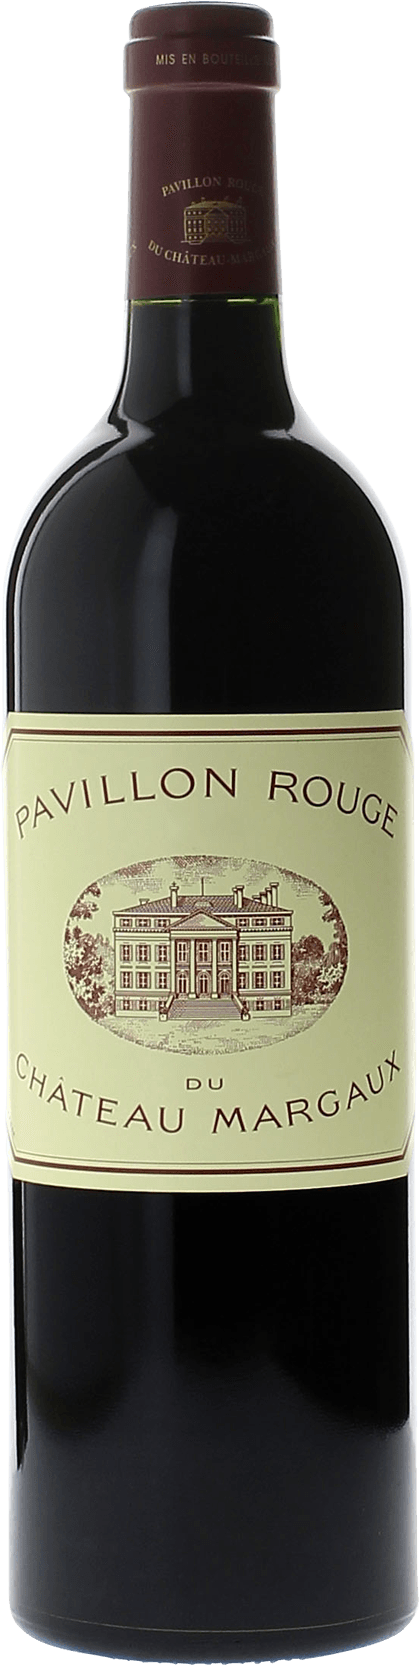 Pavillon rouge 2017 2me vin du Chteau Margaux Margaux, Bordeaux rouge